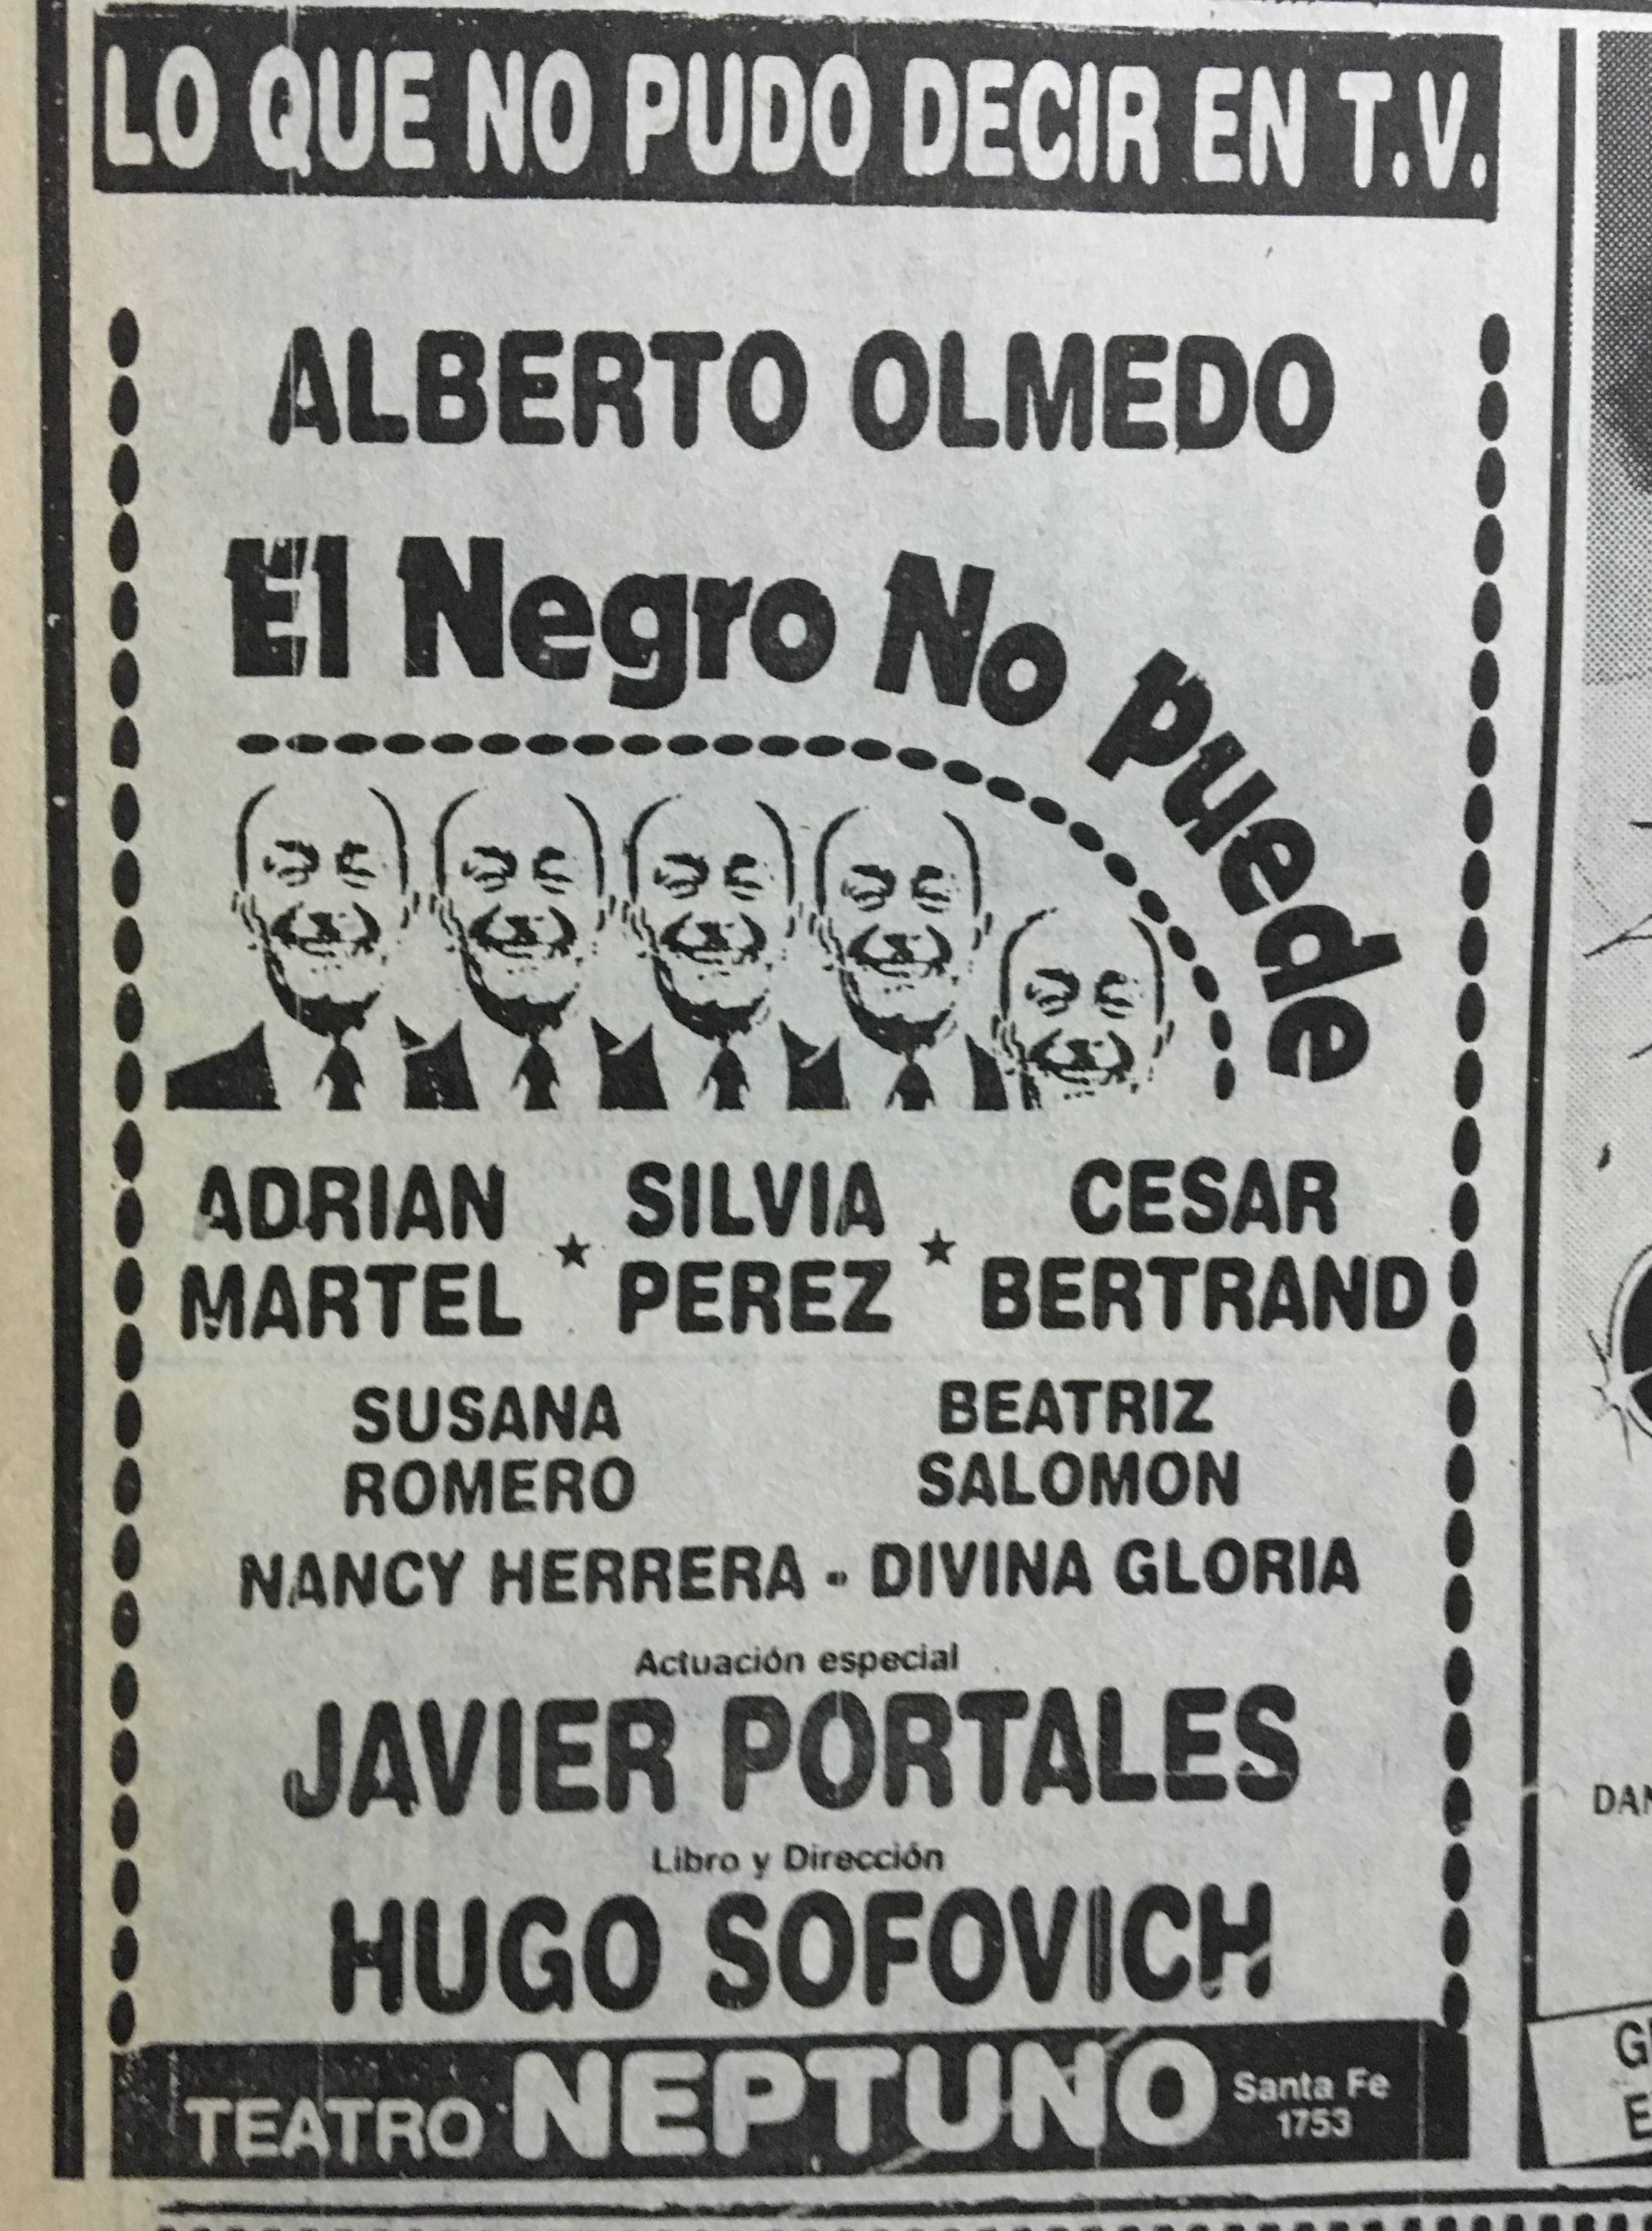  "El Negro no puede", ostenta el récord de ventas de entradas para el teatro en temporada: 118.500 tickets en el verano de 1986. 